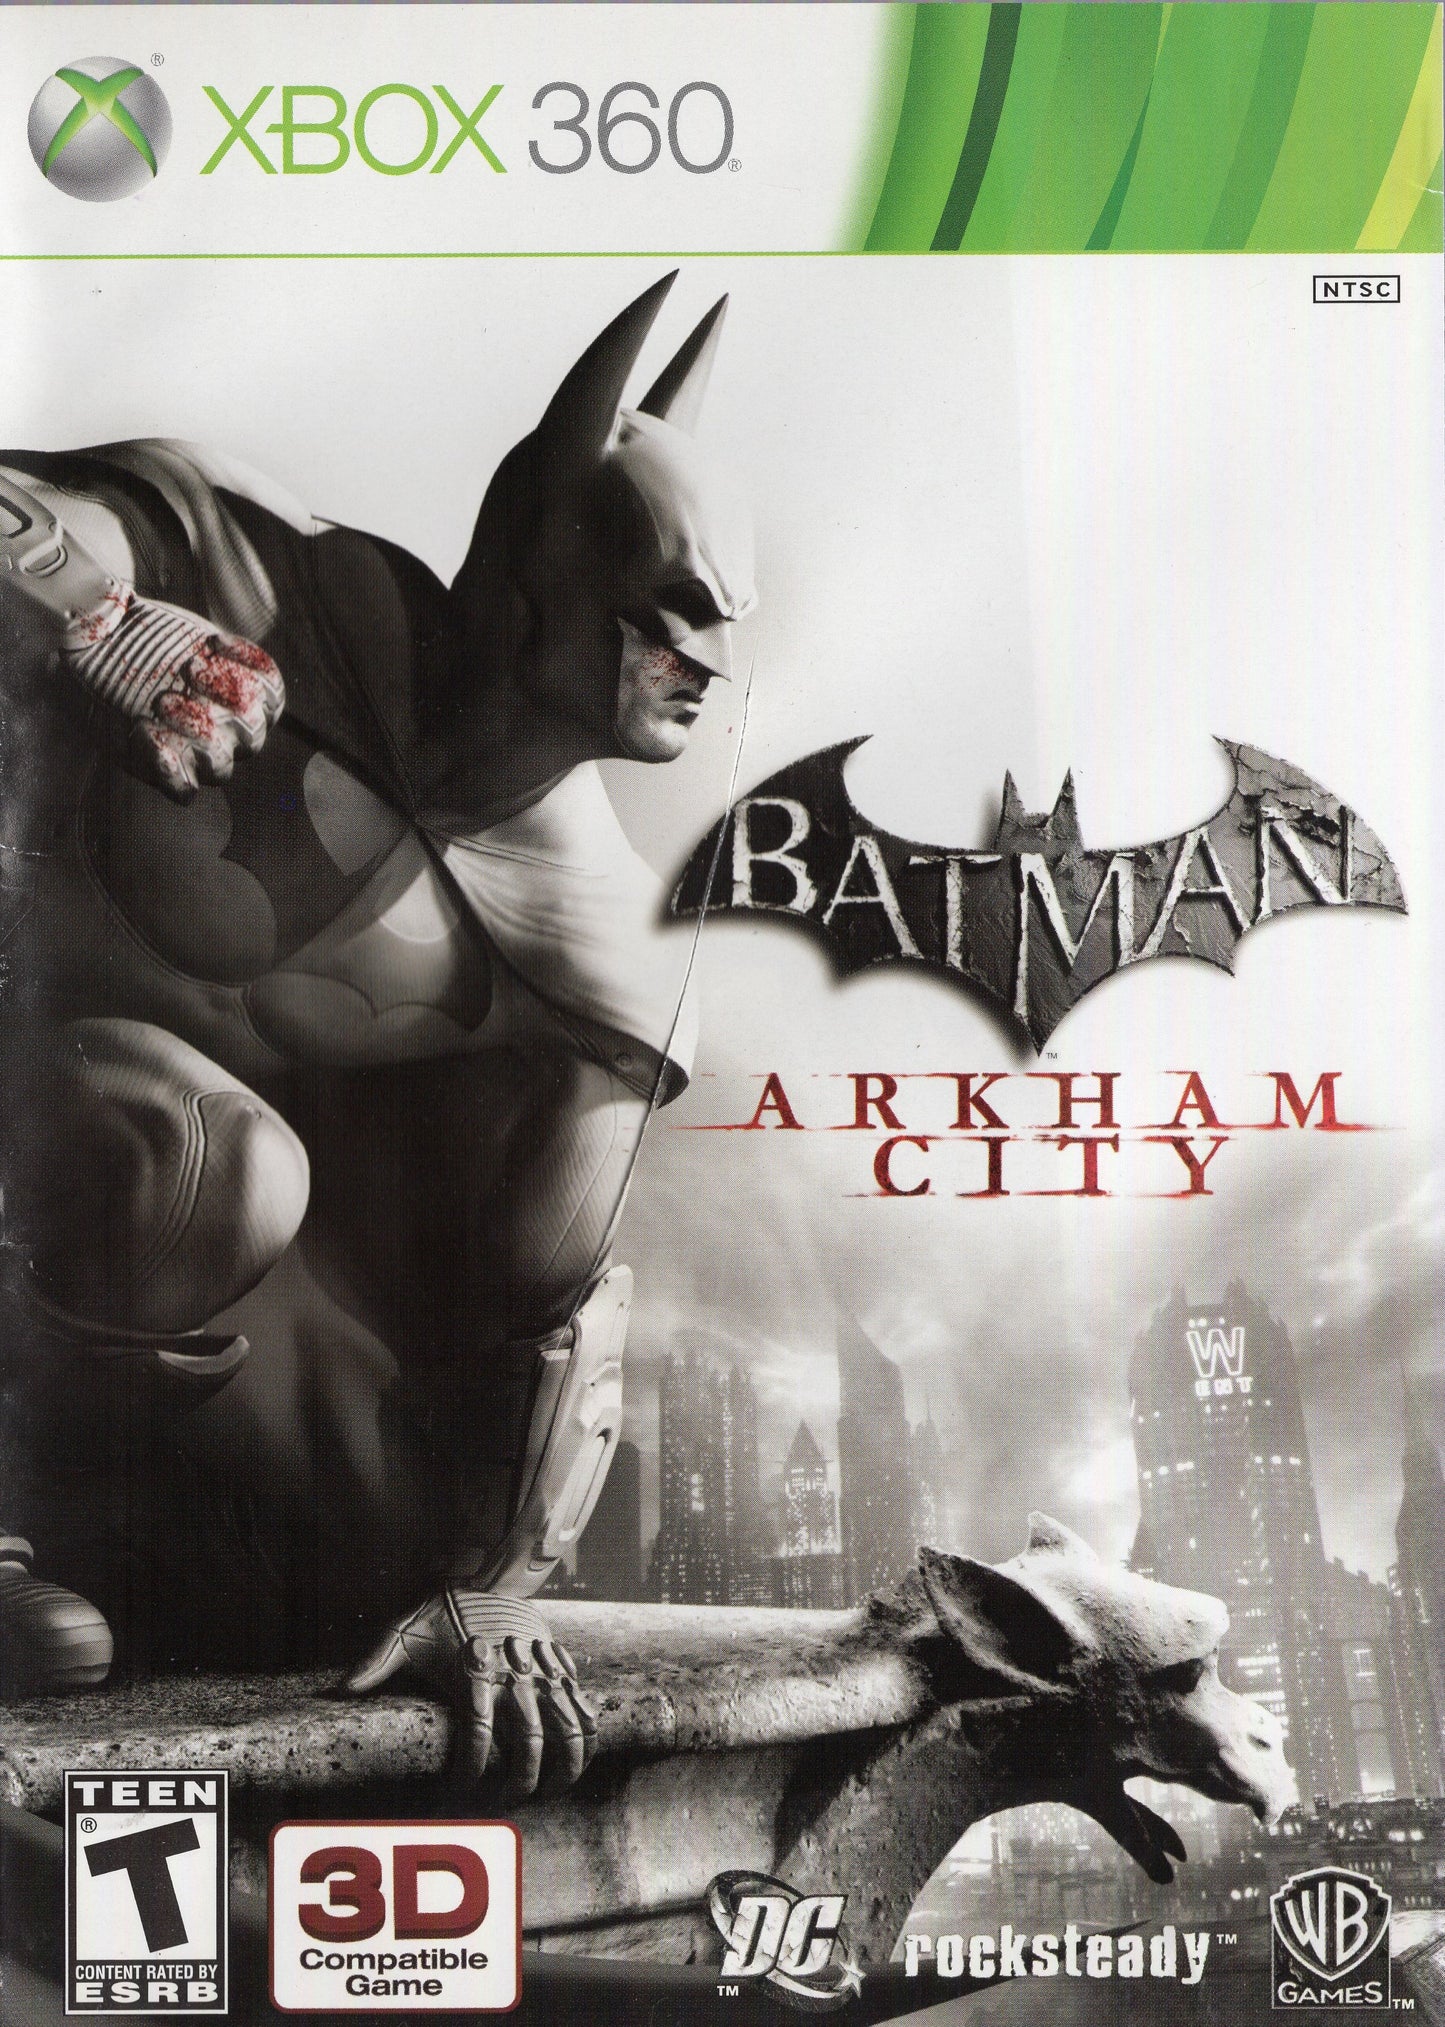 Xbox 360 Batman: Arkham City